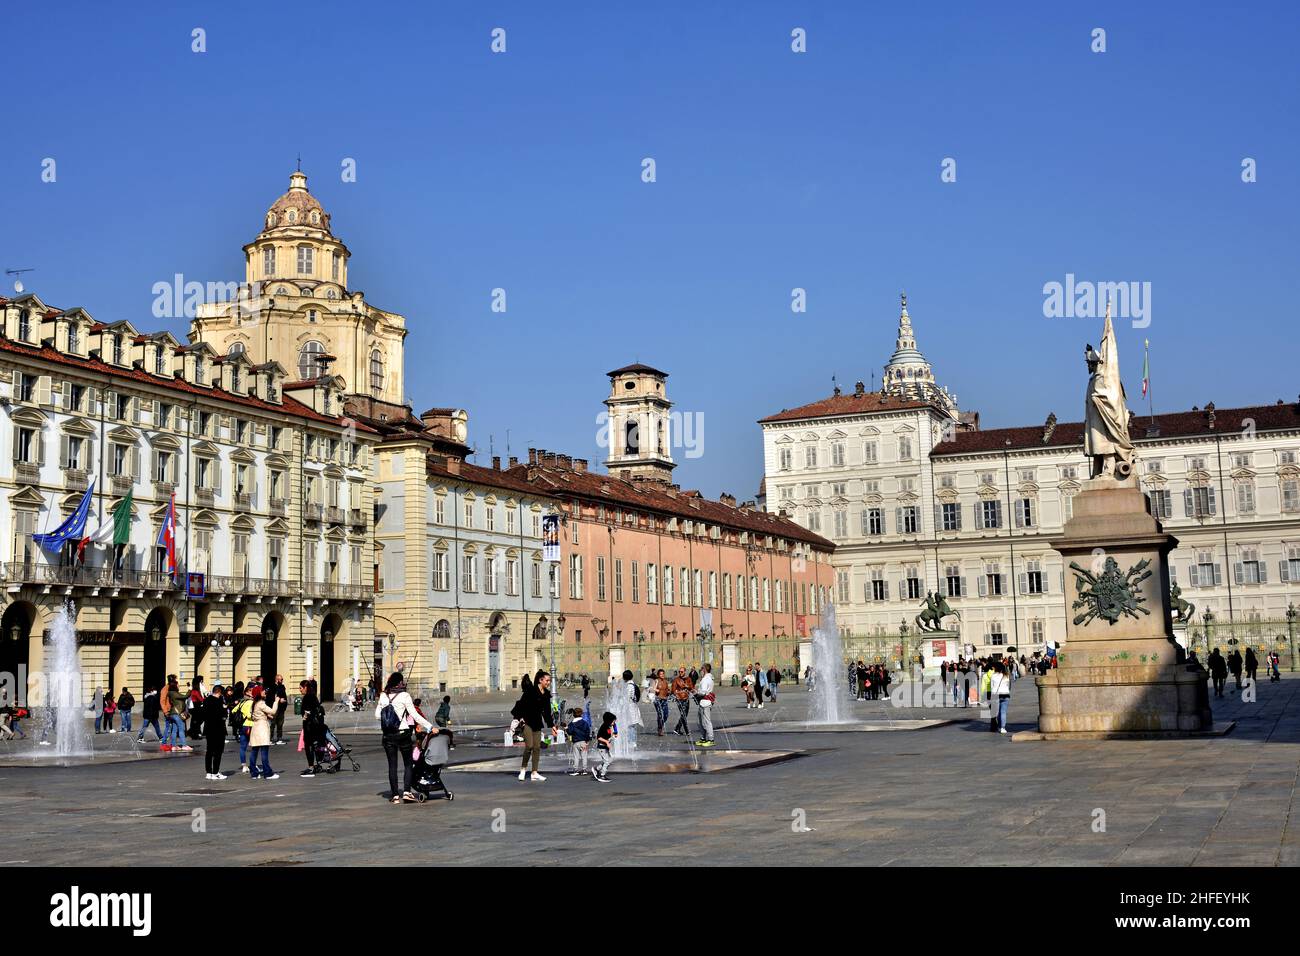 Blick auf den Königspalast (Palazzo reale) von Turin (Turin) - Italien, ( Historischer Palast Haus der Savoyen in der Stadt Turin in Norditalien) Stockfoto